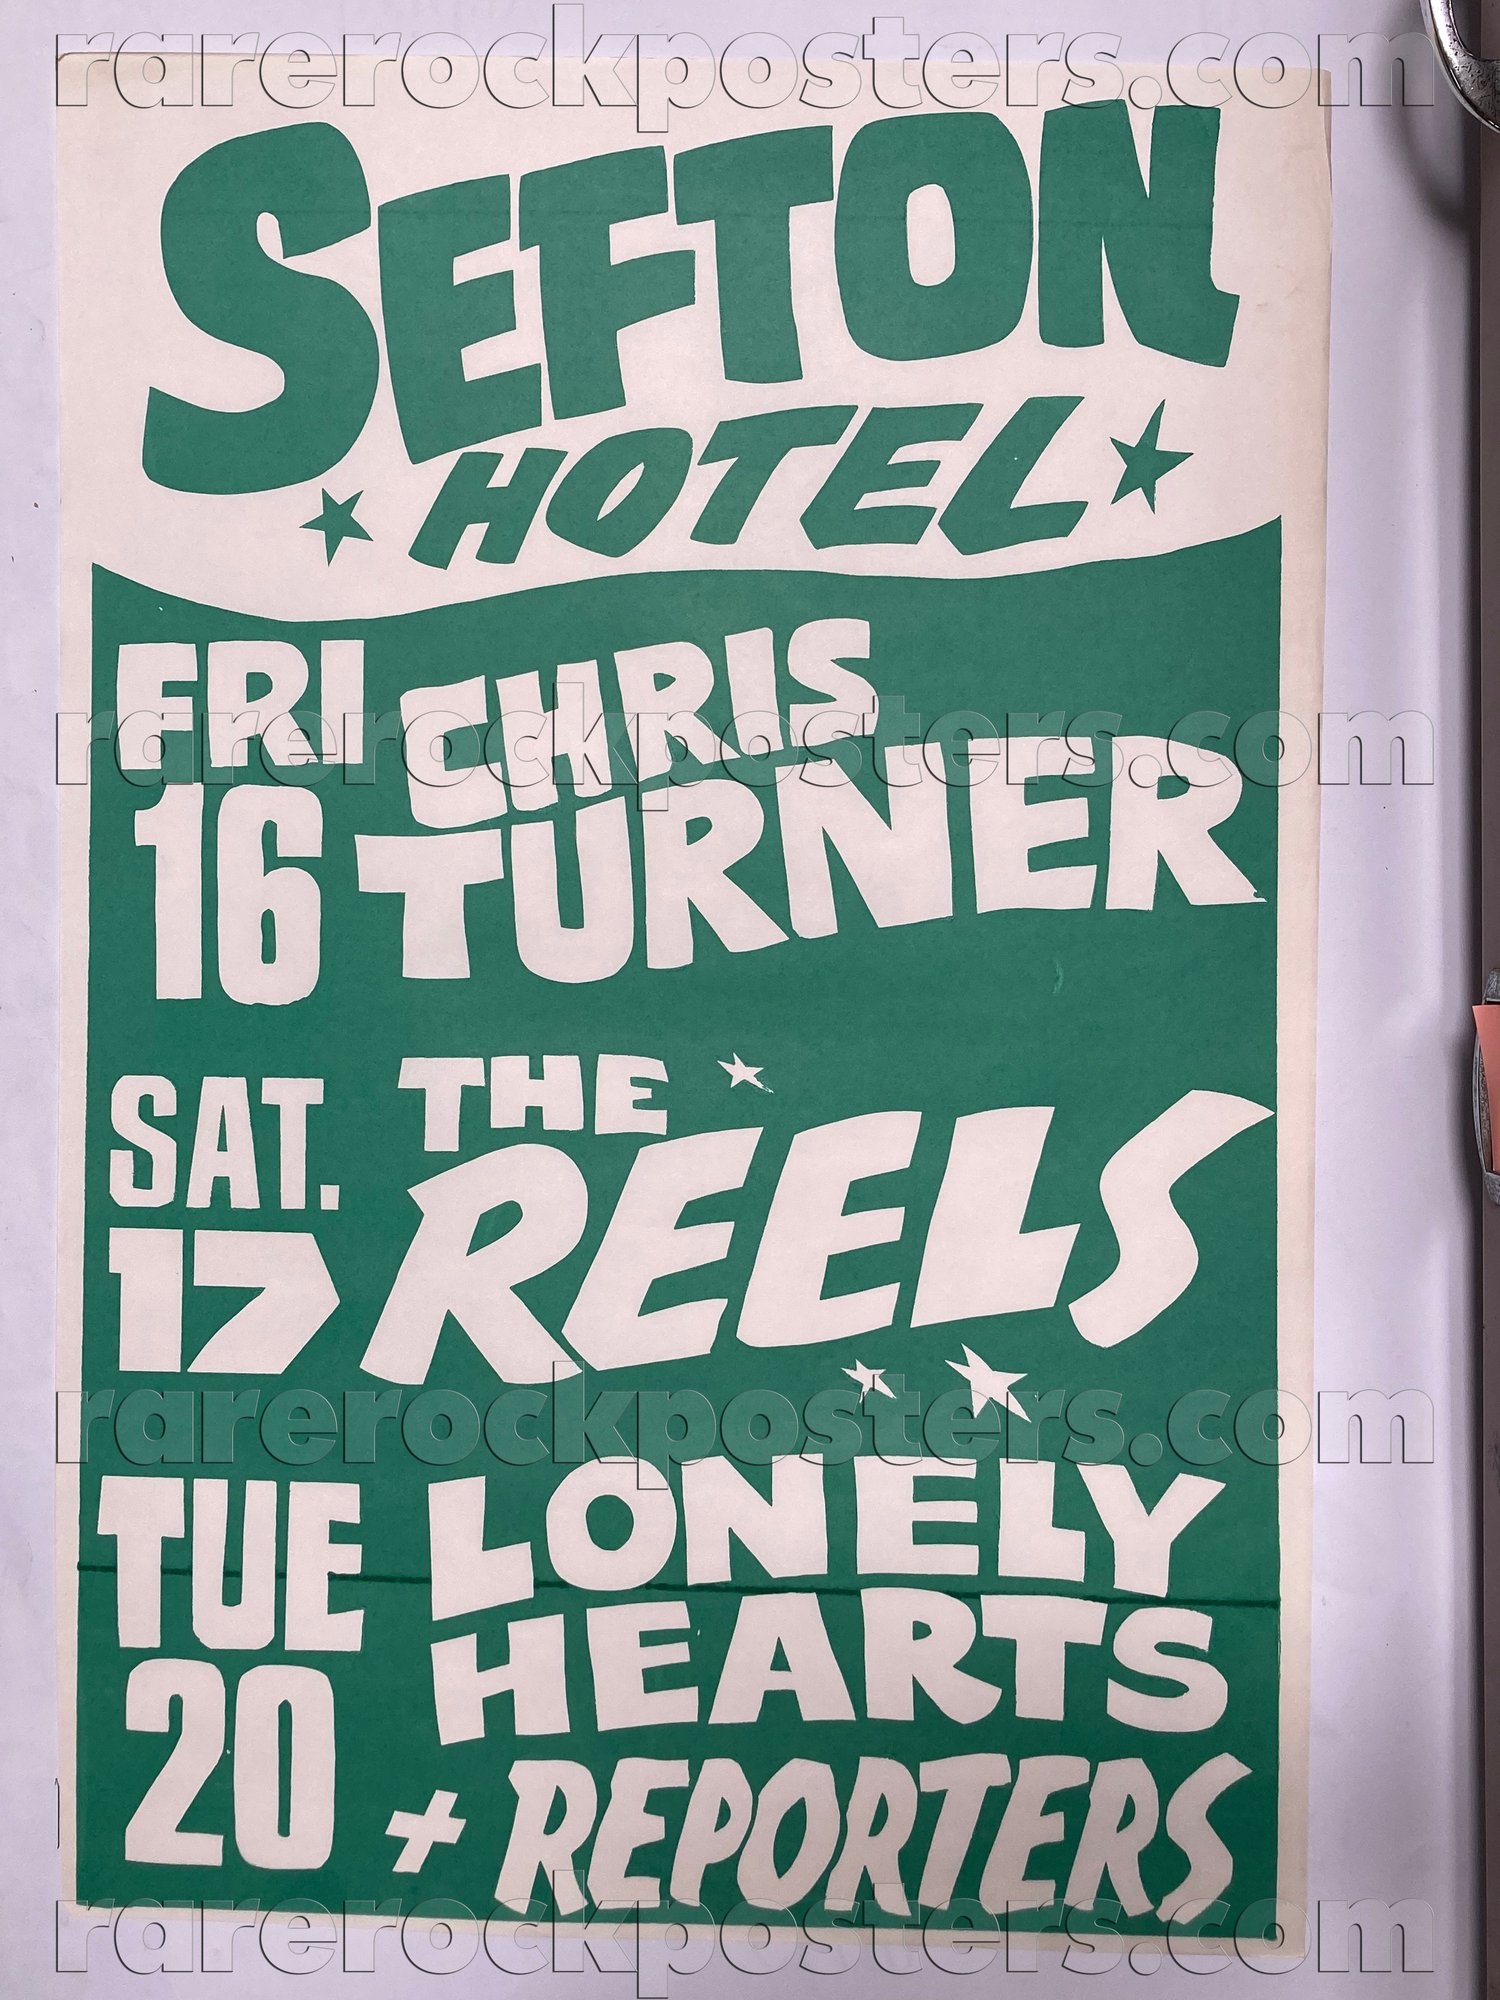 THE REELS / LONELY HEARTS / CHRIS TURNER ~ ORIGINAL 1981 AUST GIG POSTER ~ SEFTON HOTEL ~ SYDNEY